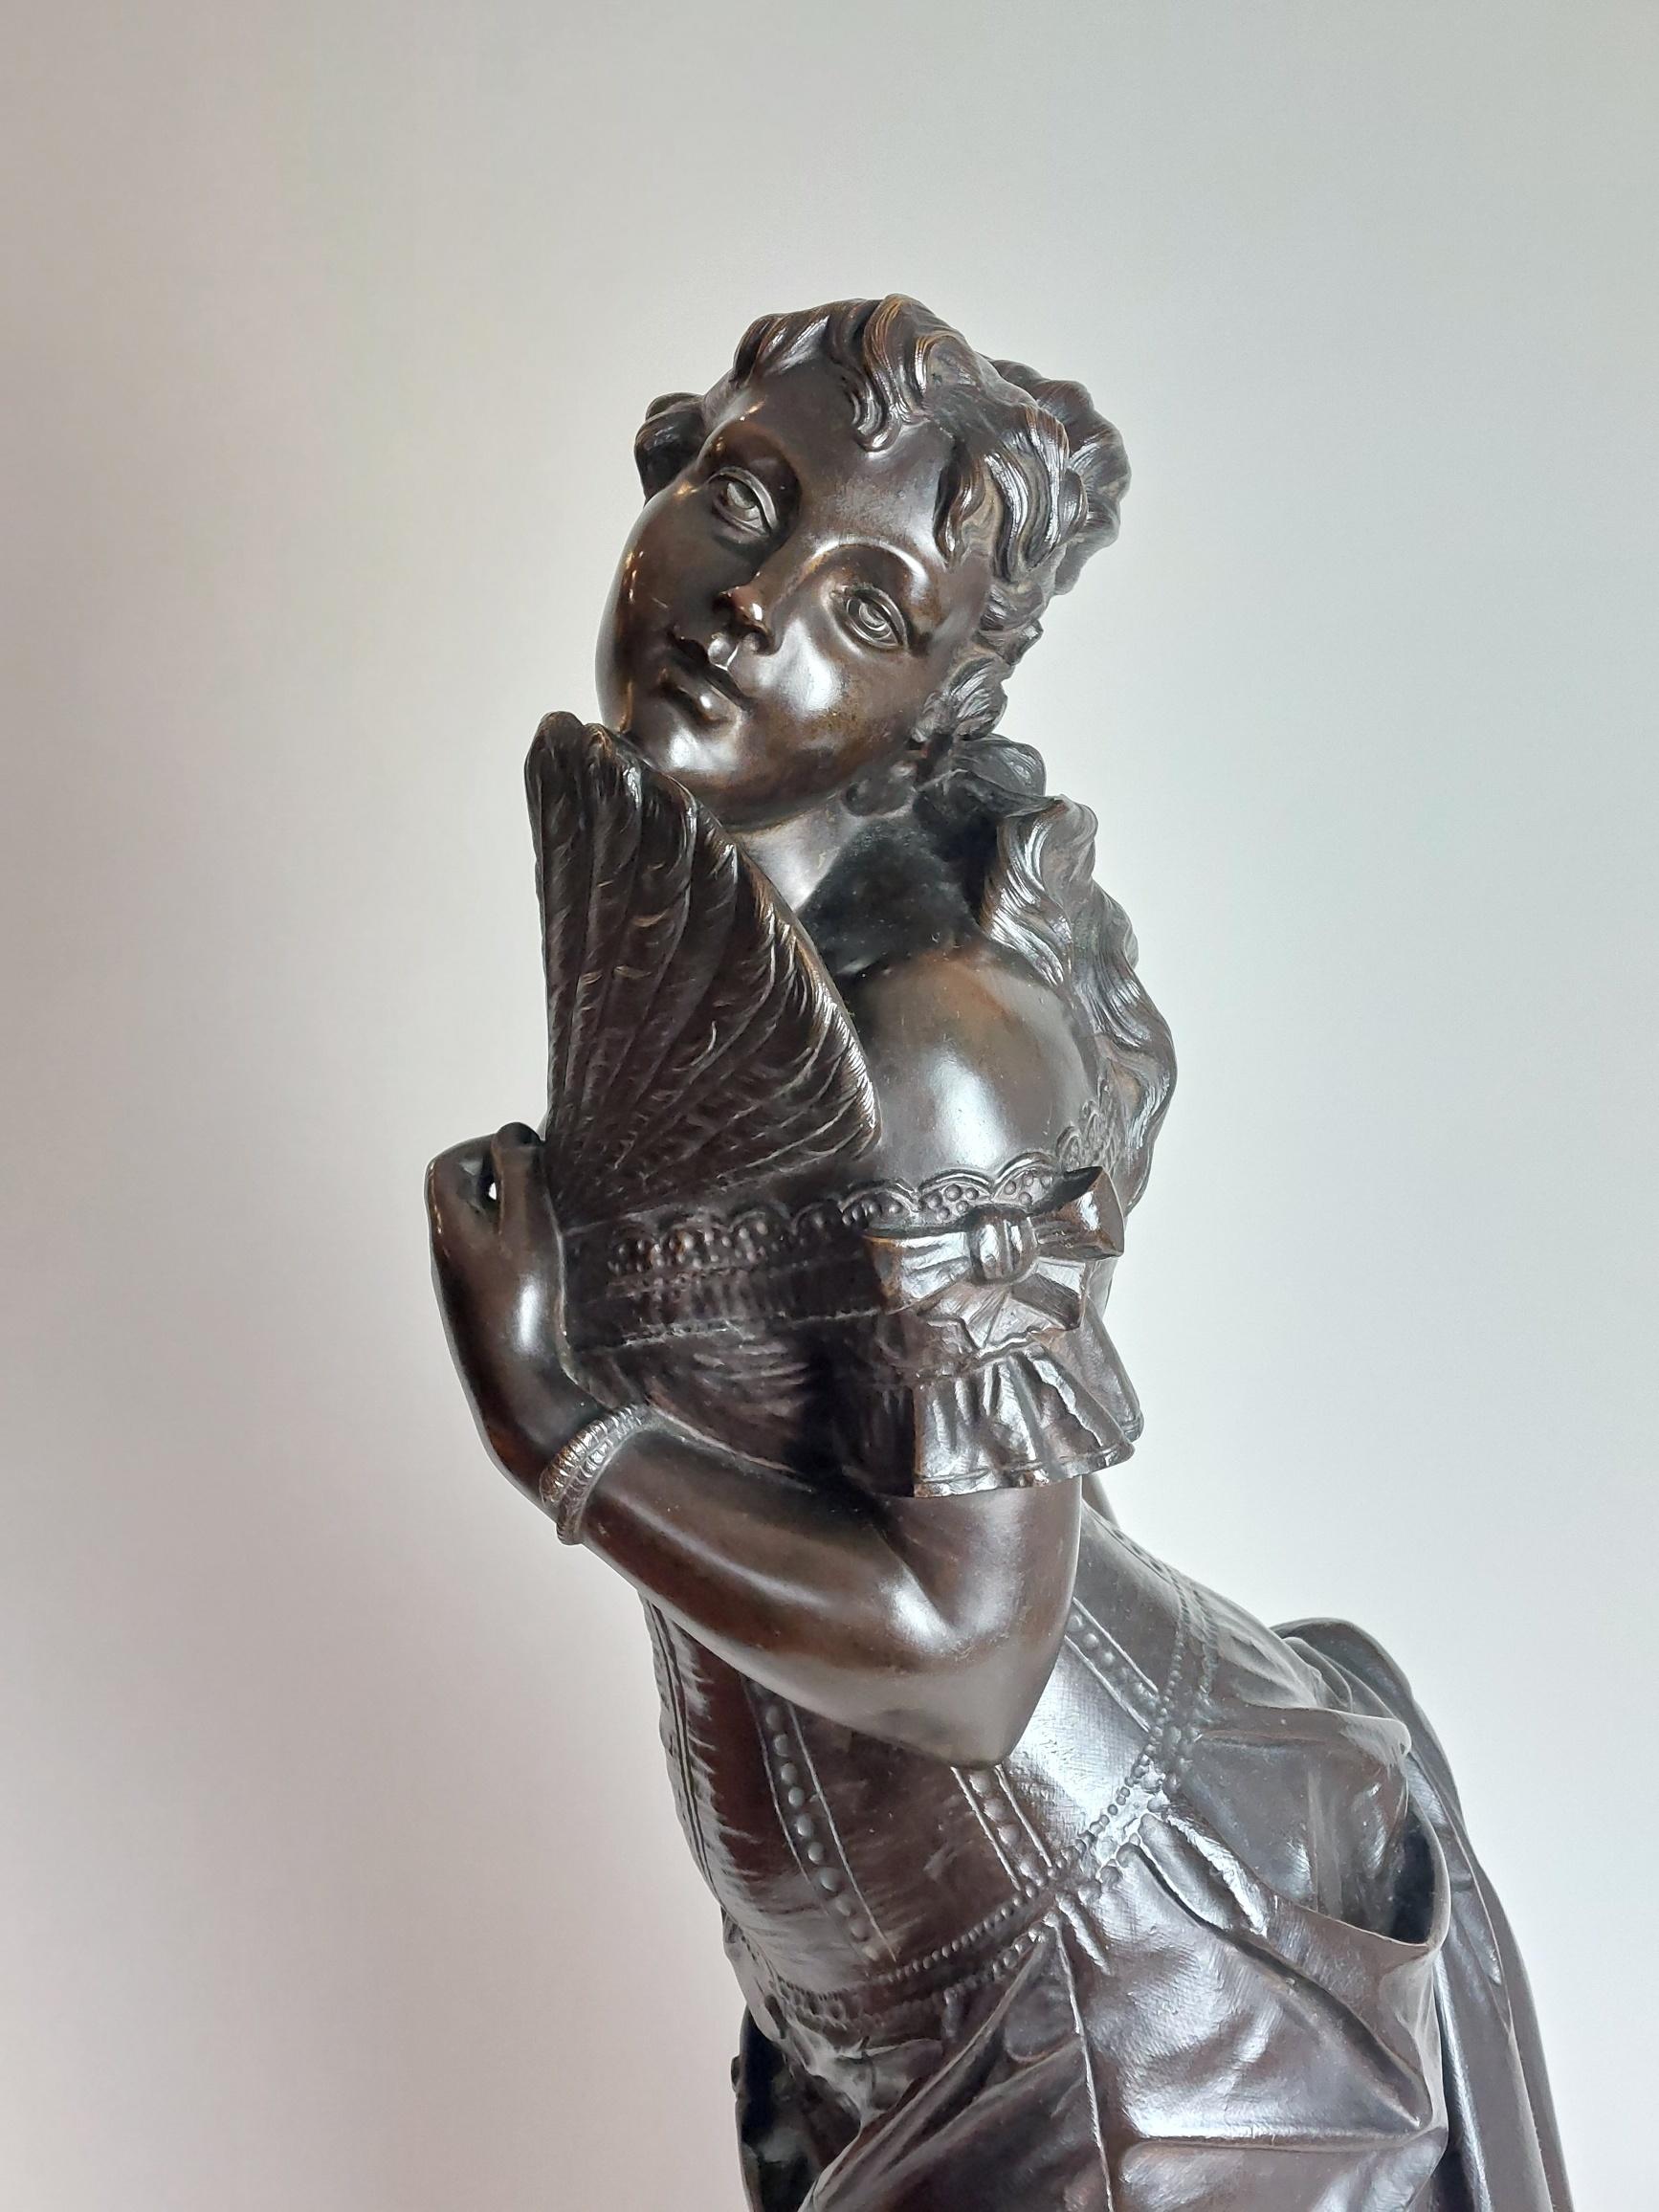 La Coquette est un bronze du 19e siècle qui représente la coquetterie. Cette dame en bronze est vêtue d'un corset français classique et tient son éventail tout en regardant effrontément par-dessus son épaule.

Fabry
Fabry était une fonderie